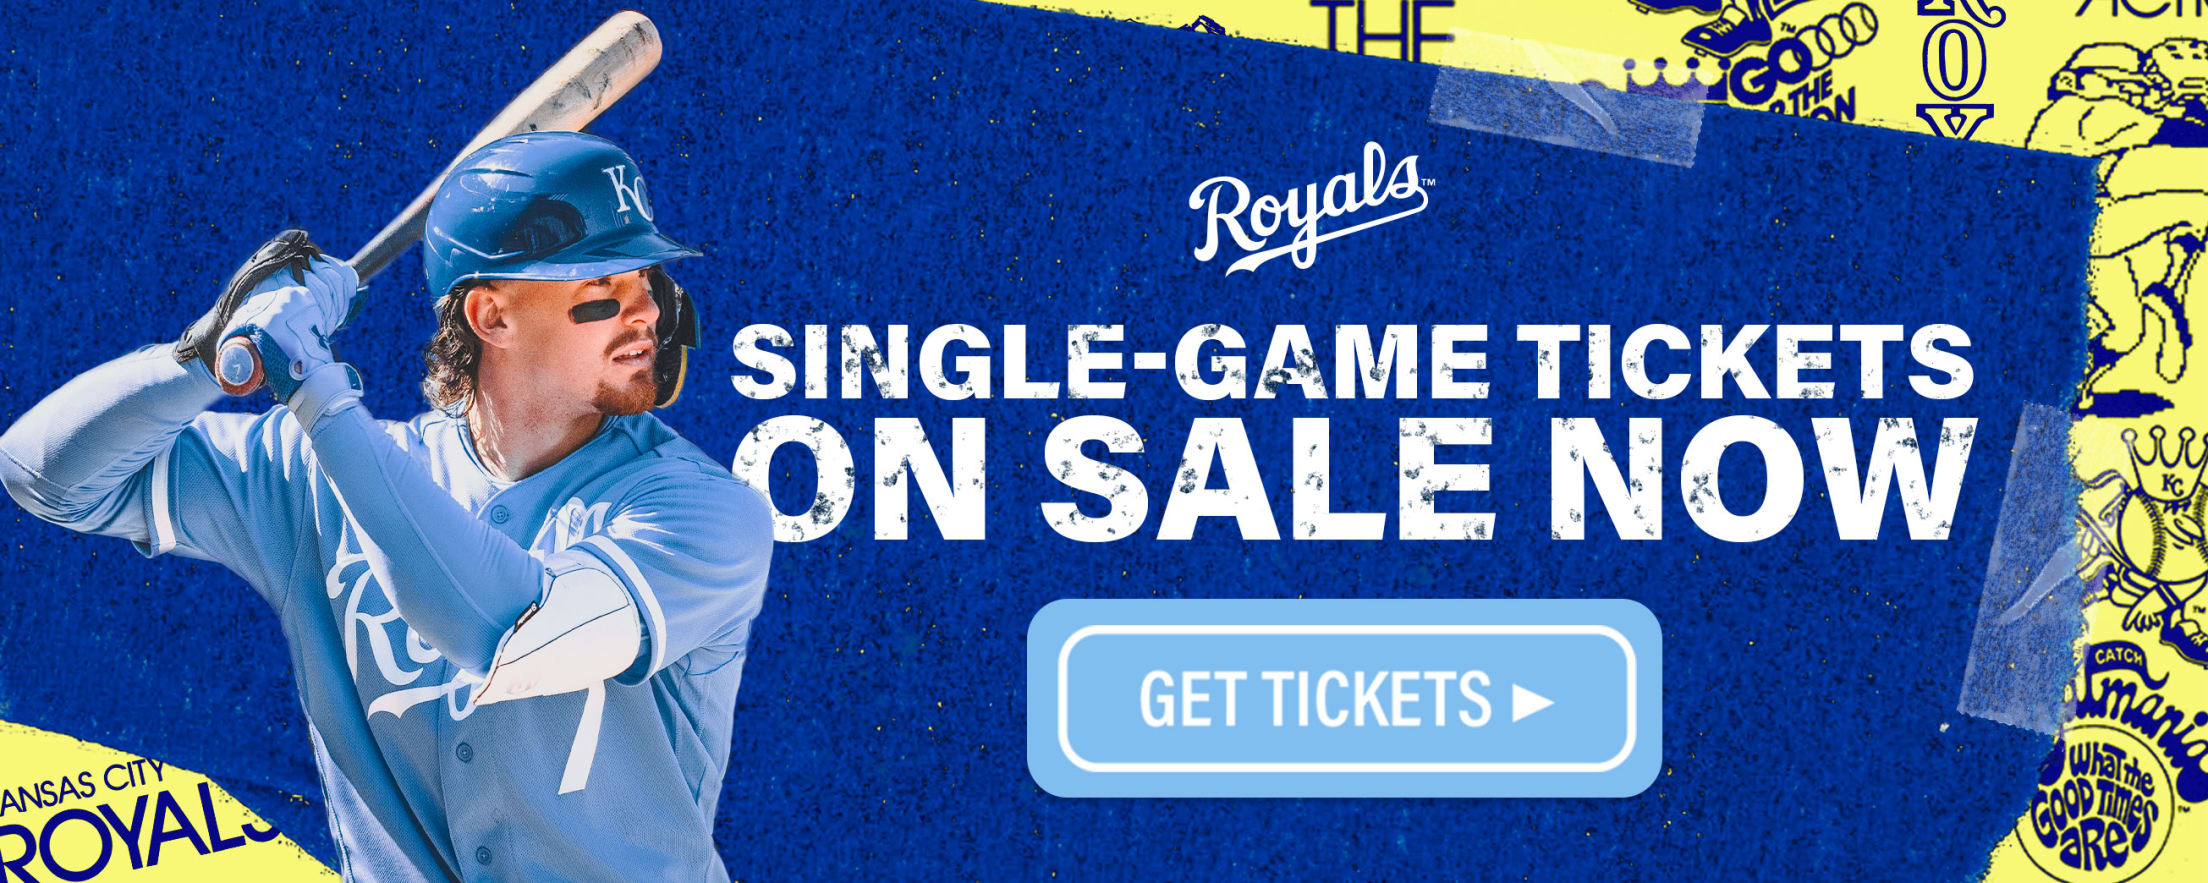 Royals Ticket Information Kansas City